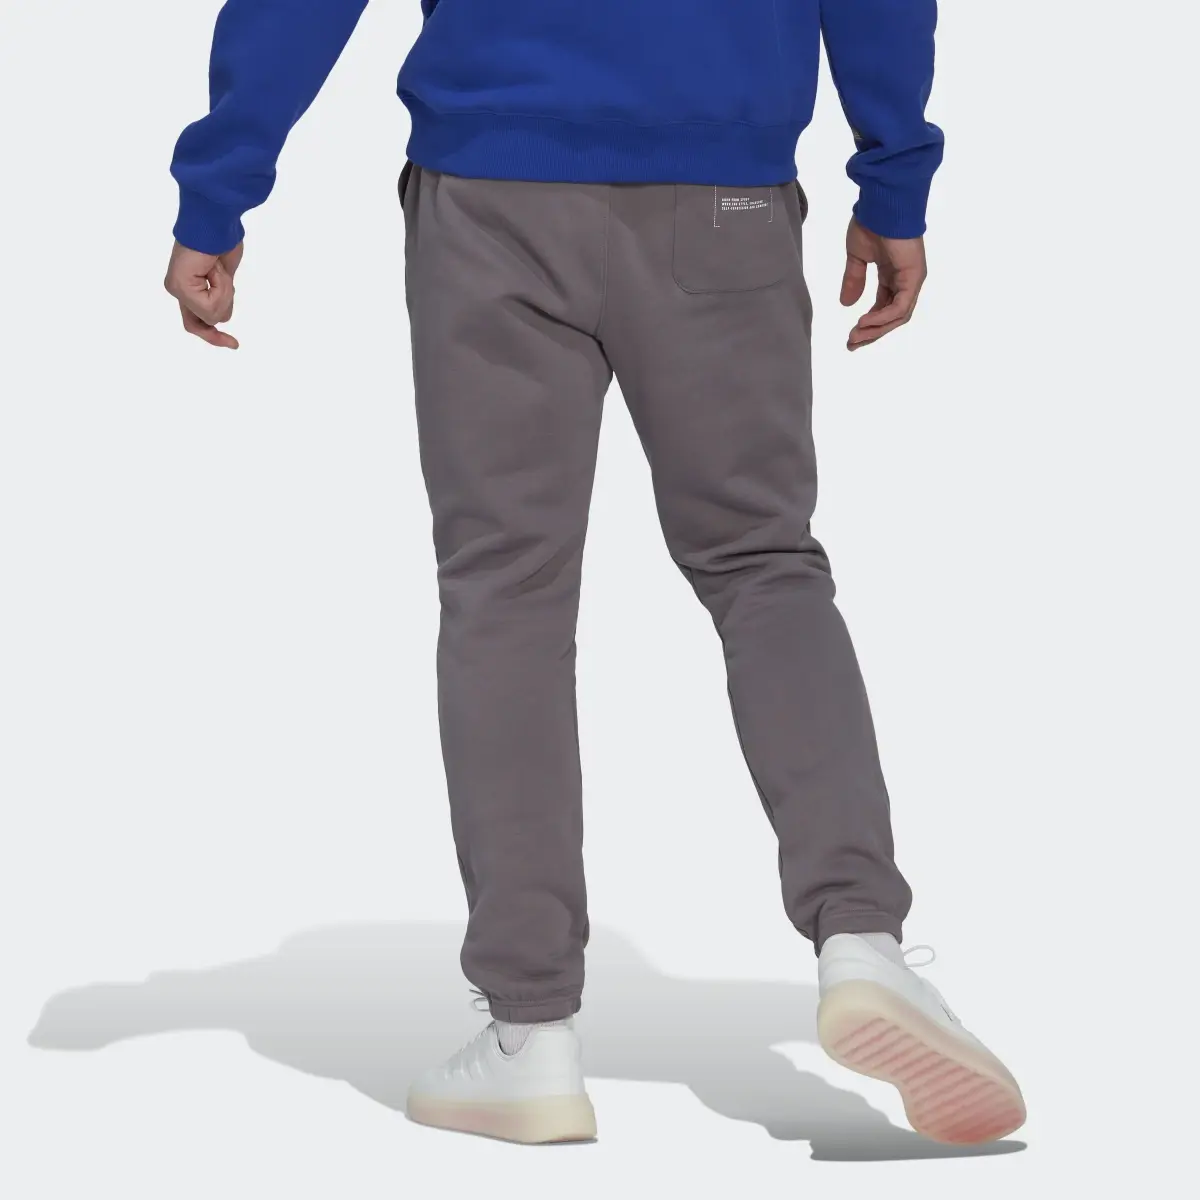 Adidas Fleece Pants. 3